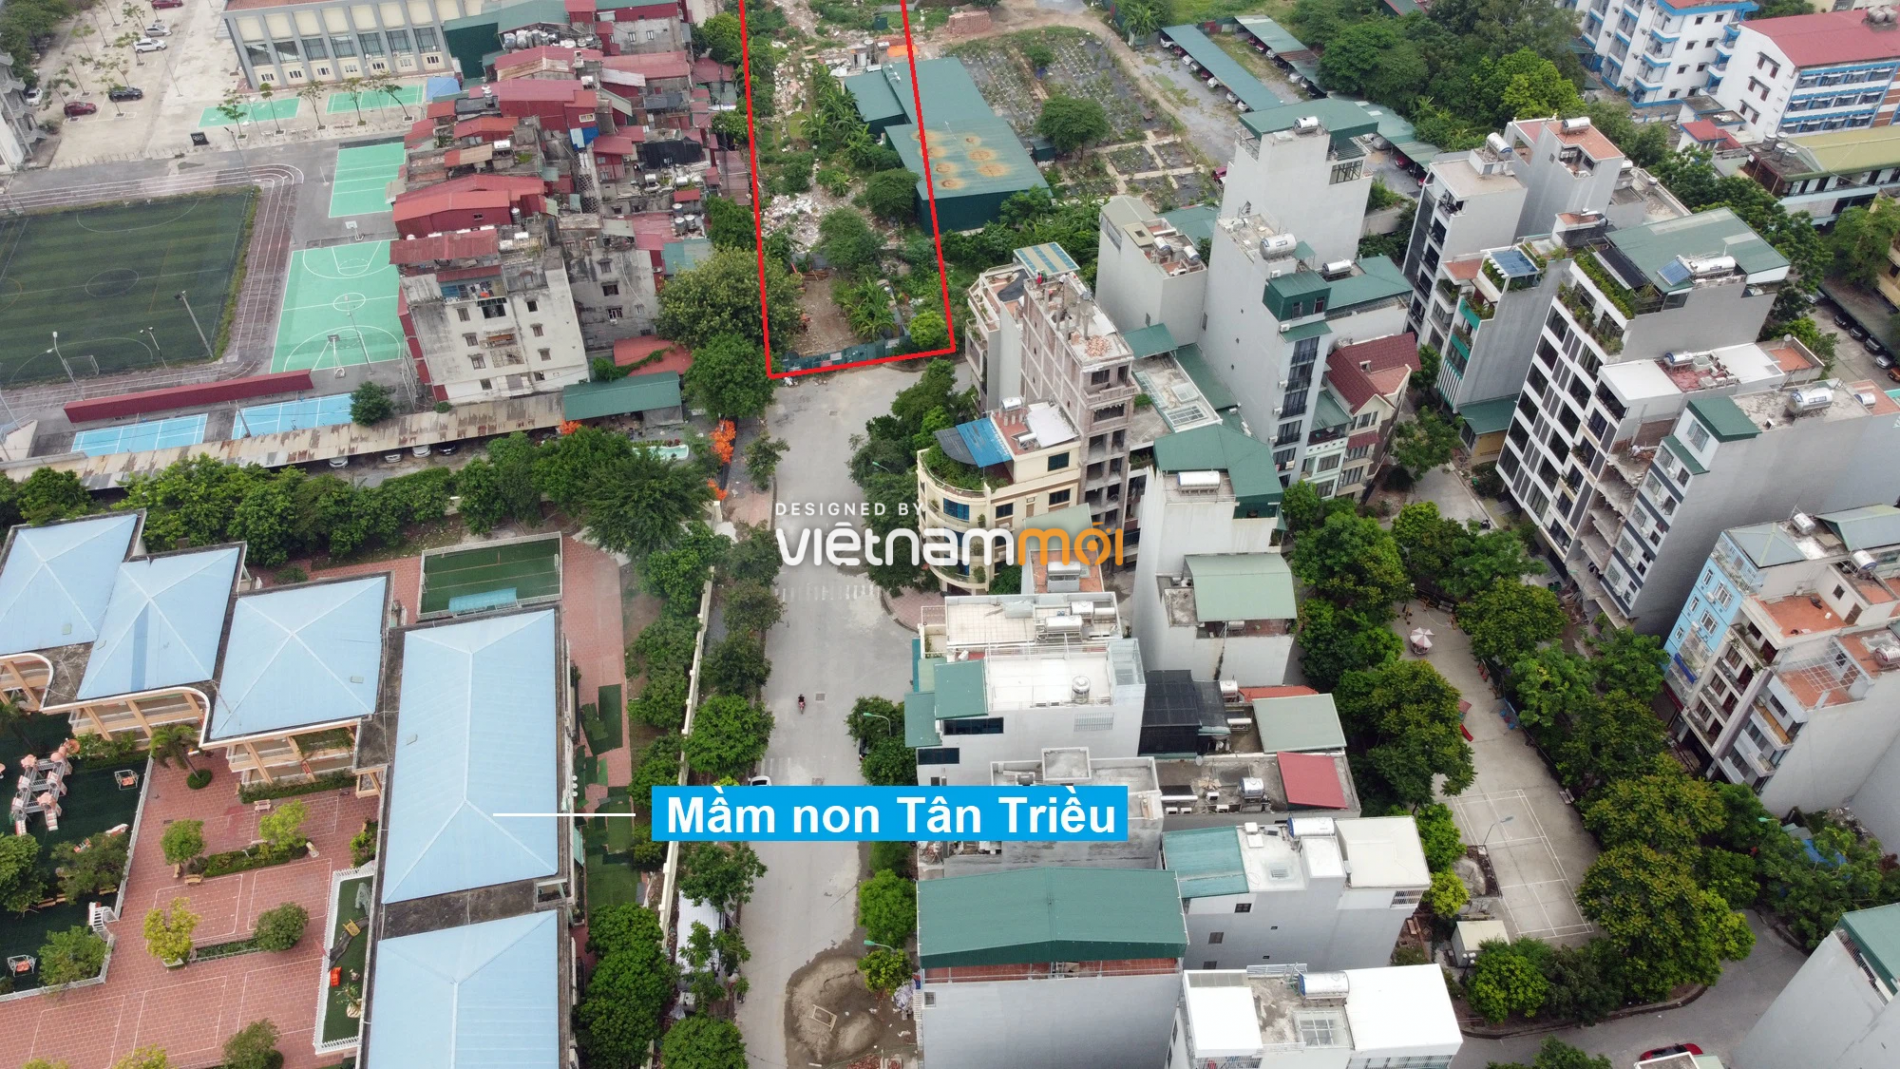 Những khu đất sắp thu hồi để mở đường ở xã Tân Triều, Thanh Trì, Hà Nội (phần 3) - Ảnh 10.